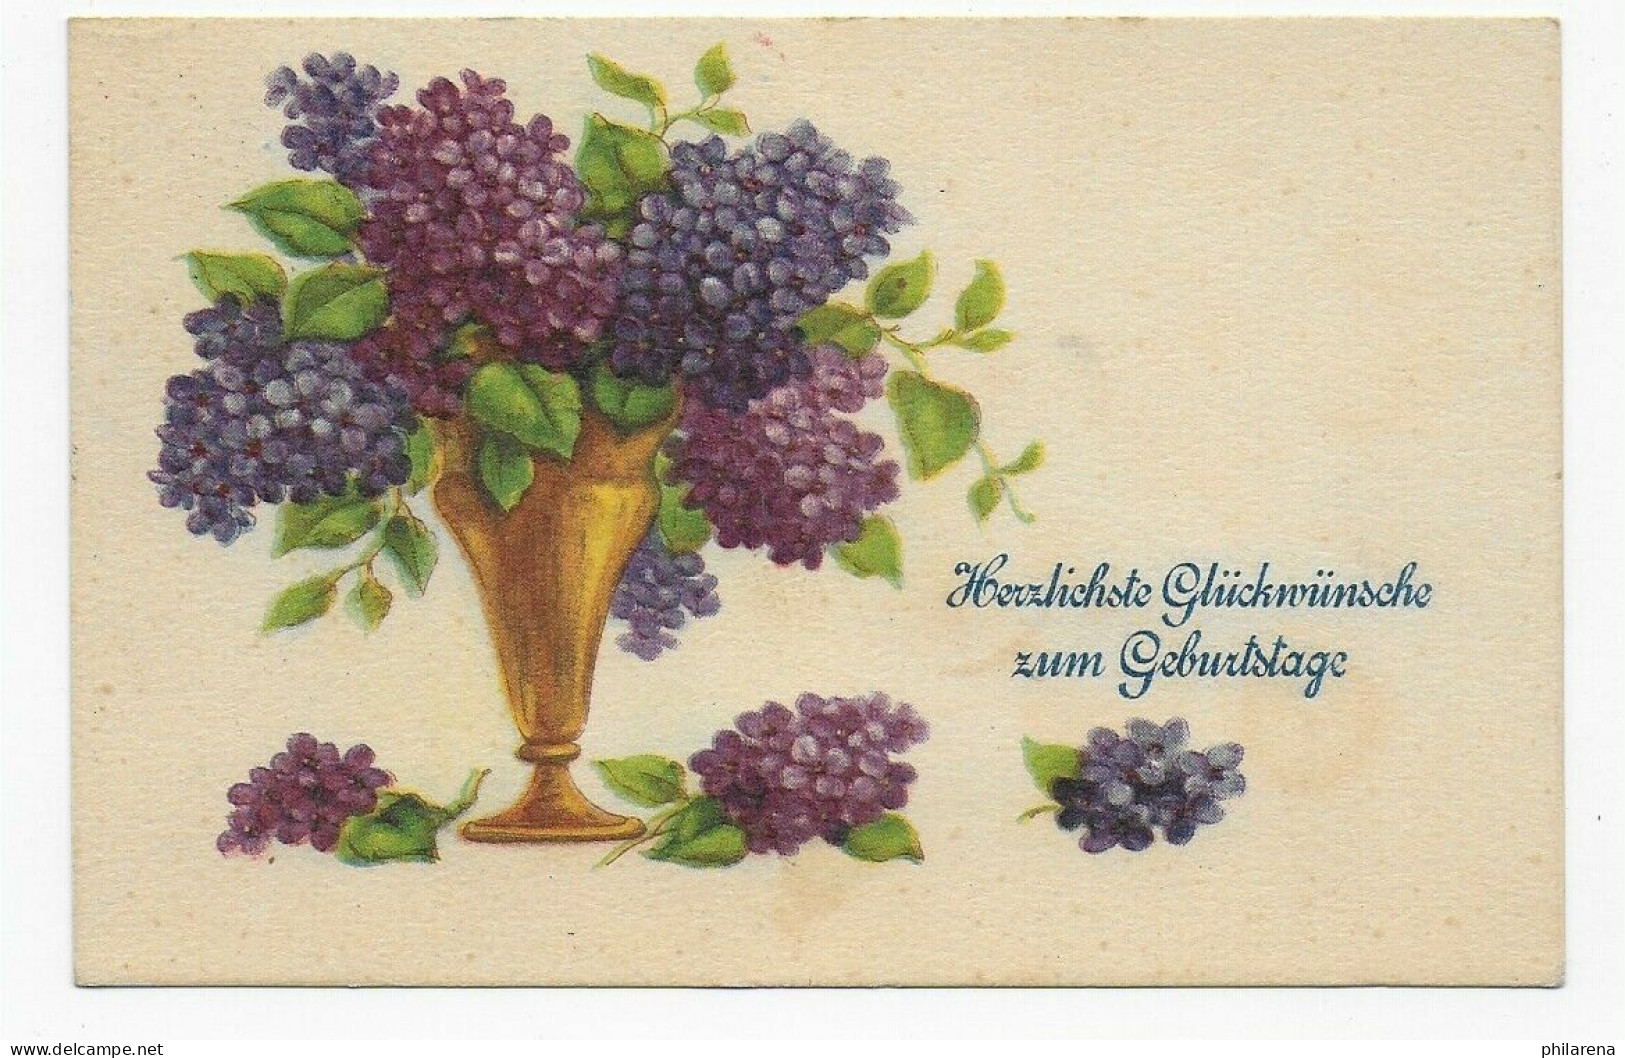 Geburtstagskarte Von Postagentur Rakszawa über Lancut Nach Wien, 1940 - Bezetting 1938-45